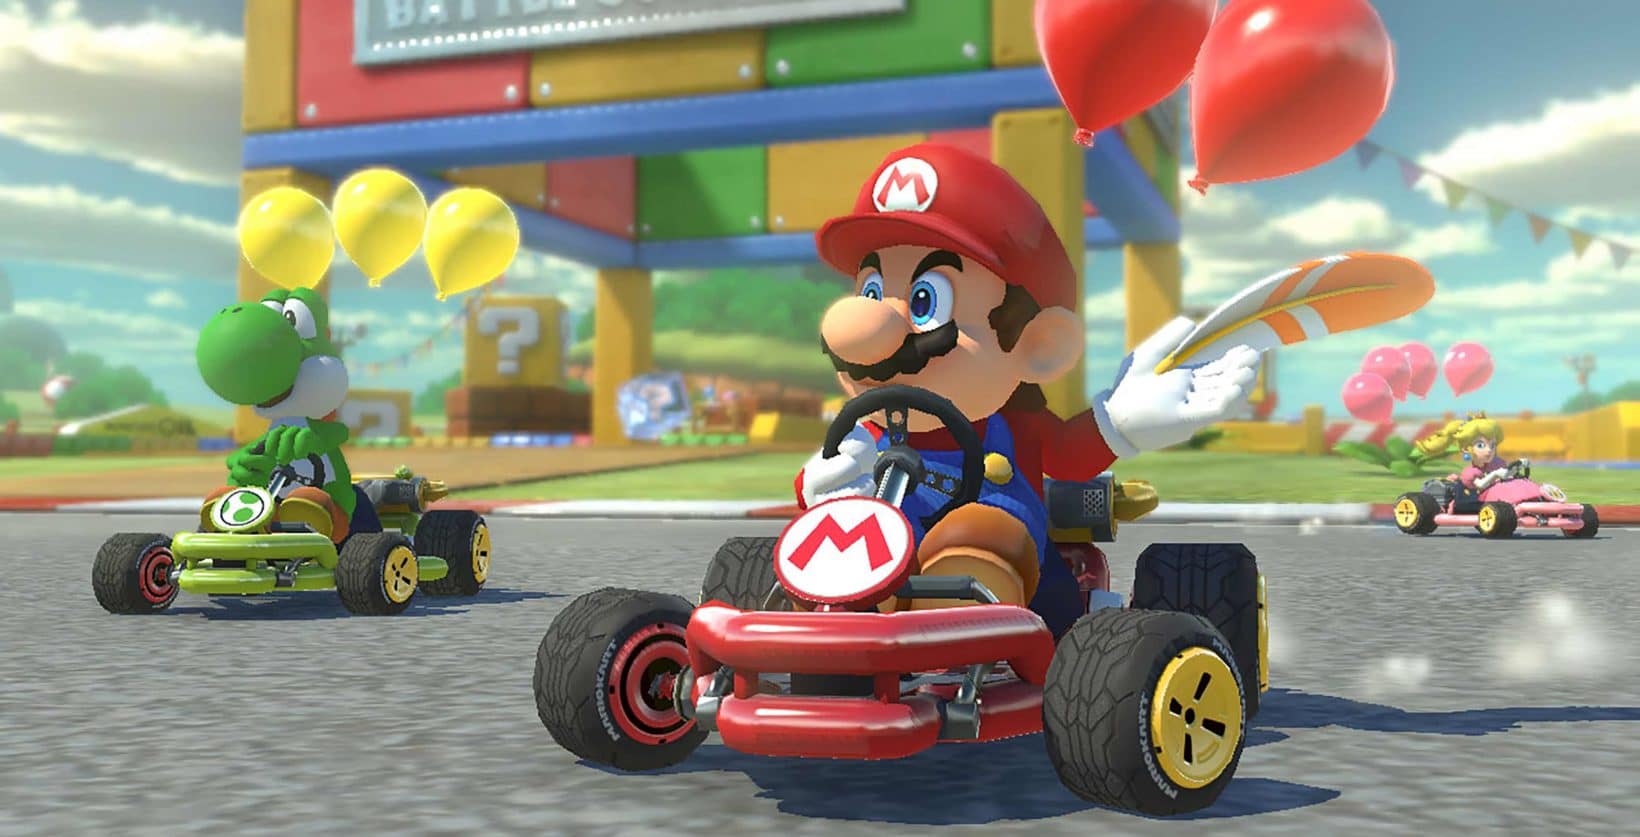 Mario Kart 8 Deluxe conquista le vendite inglesi grazie al Black Friday 2